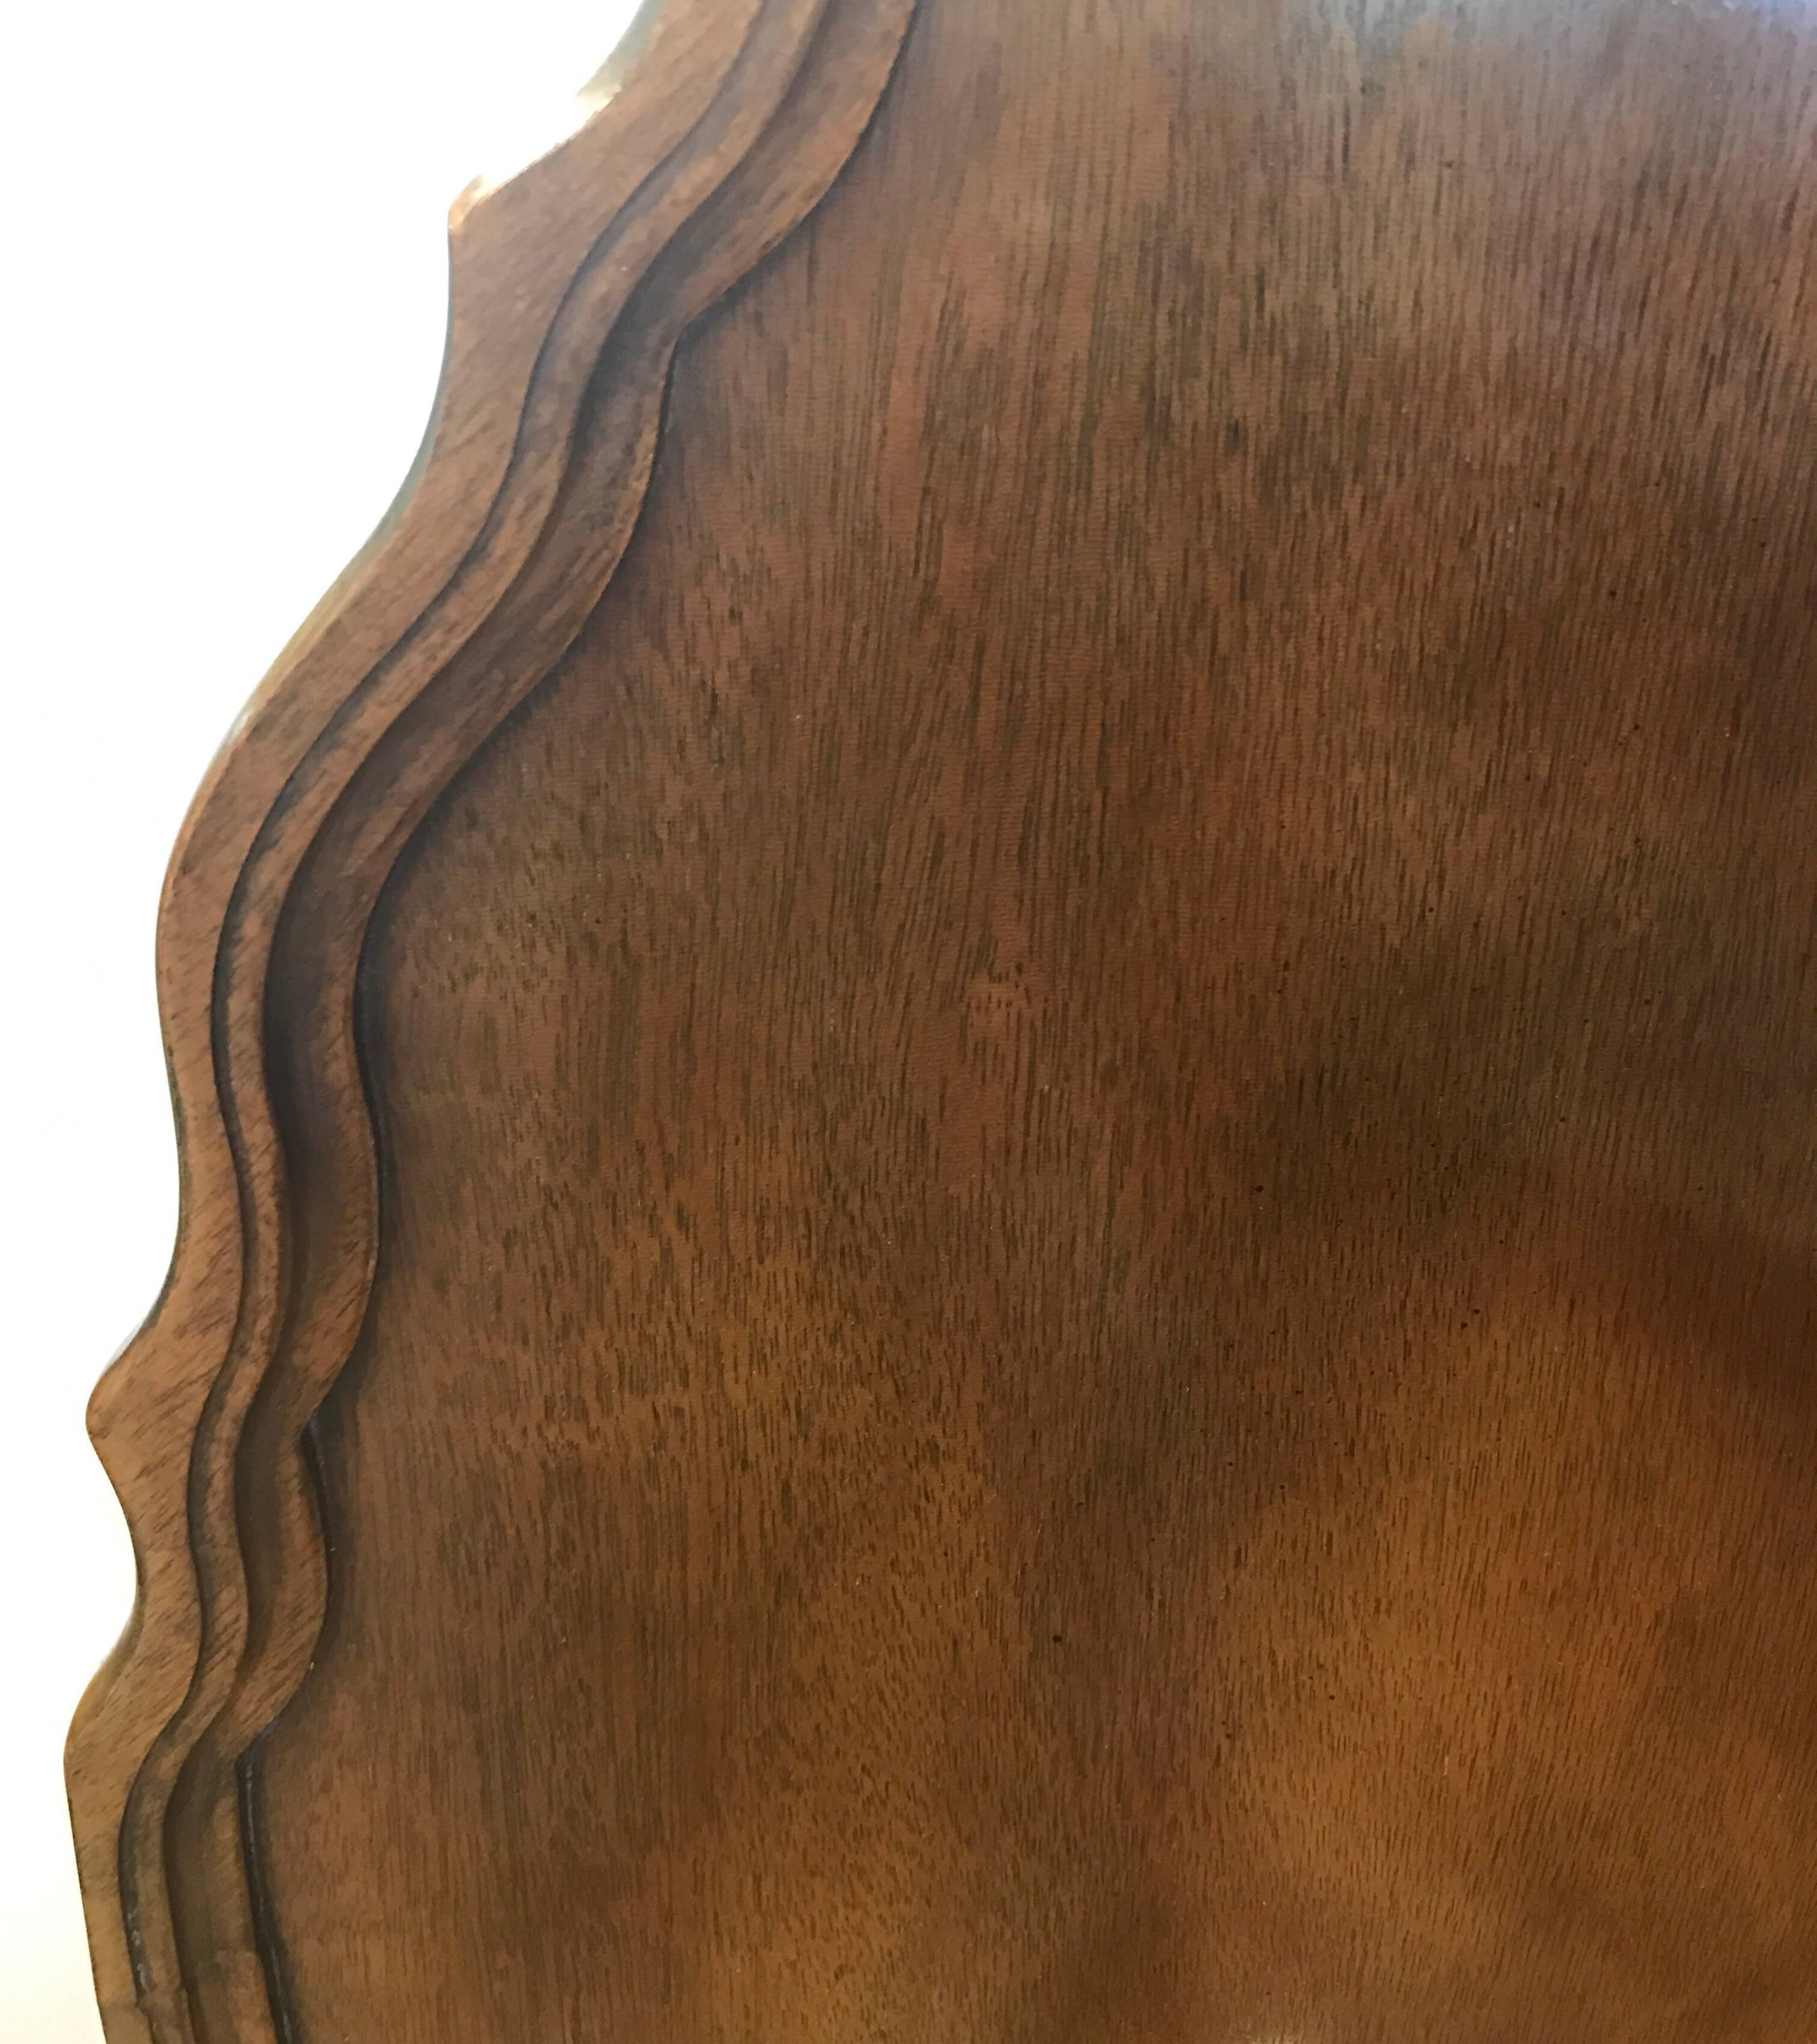 Elegant Baker Furniture signed mahogany tilt-top occasional table.